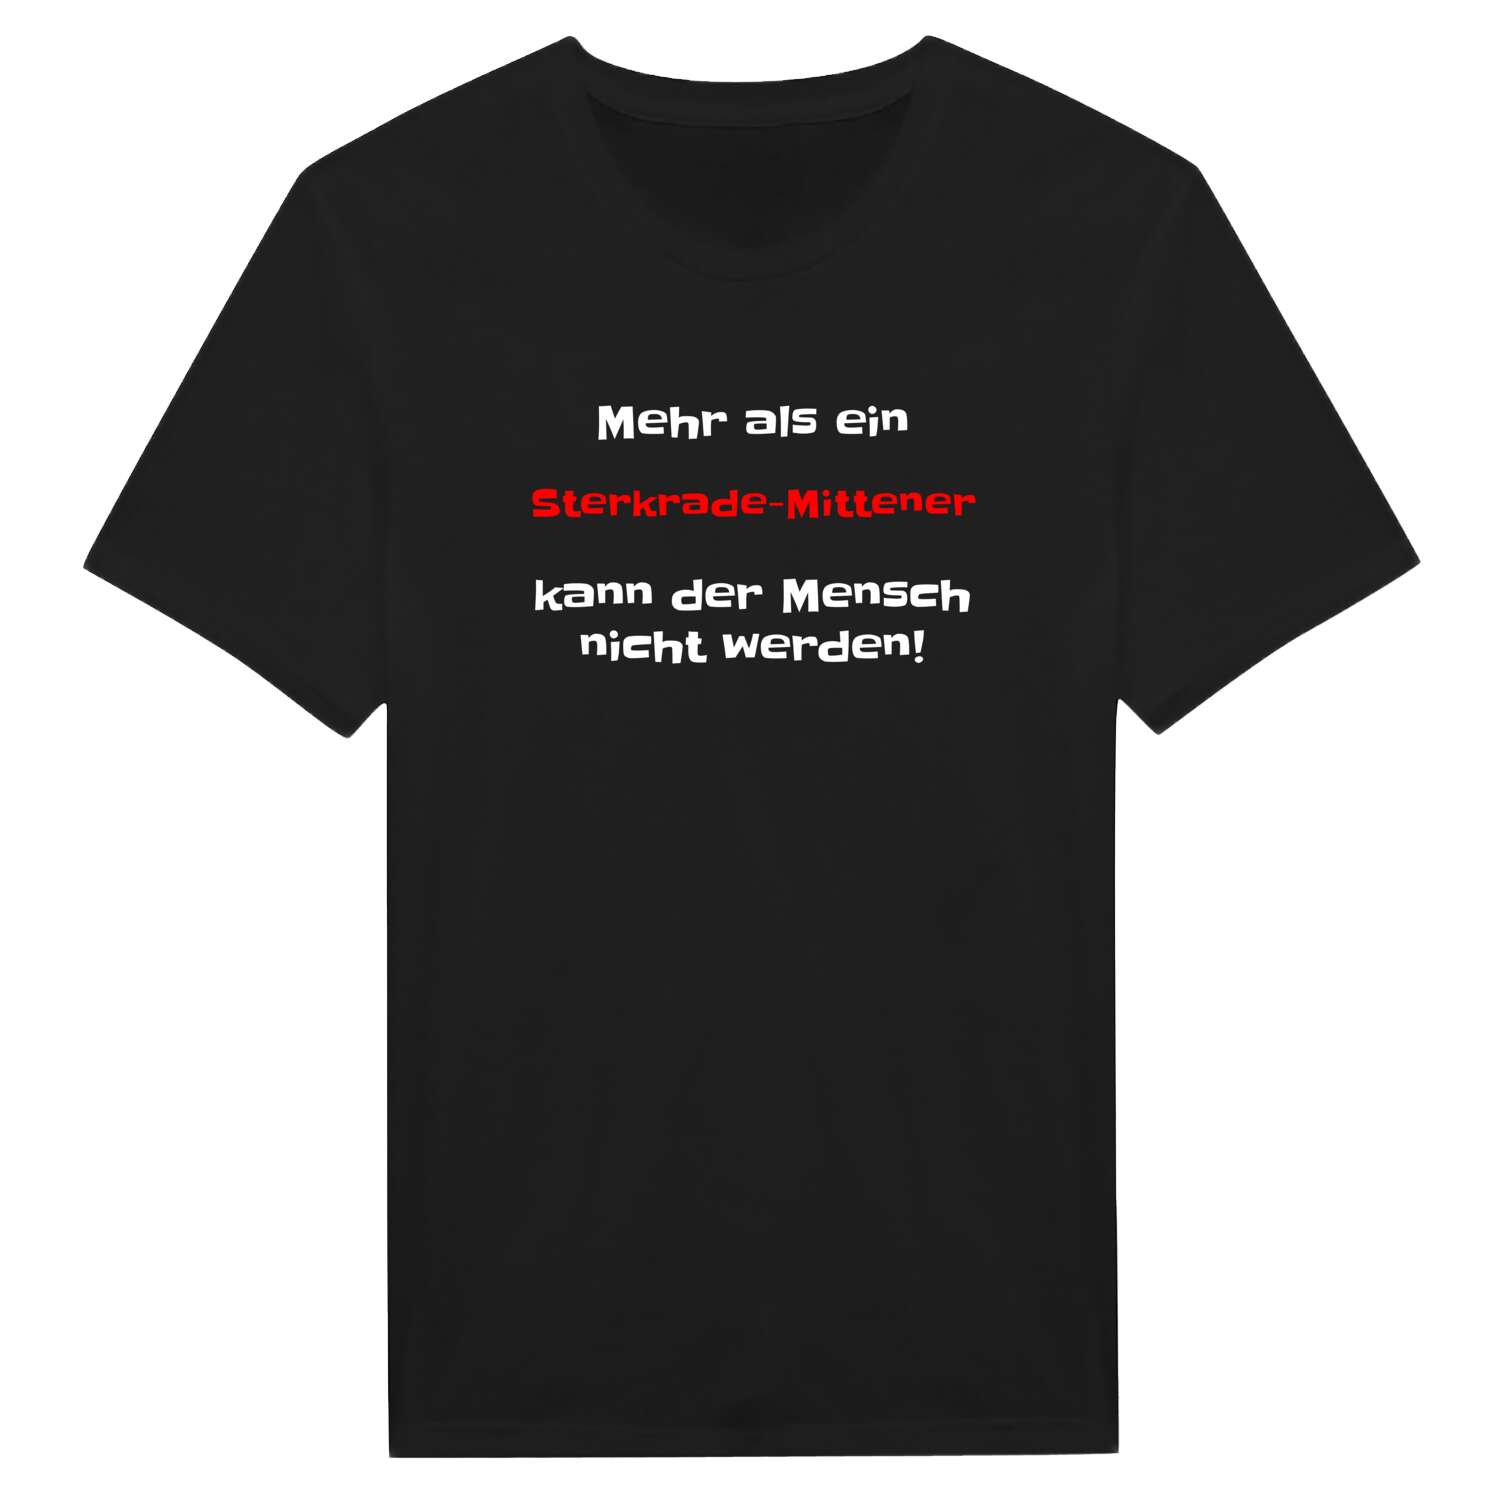 Sterkrade-Mitte T-Shirt »Mehr als ein«